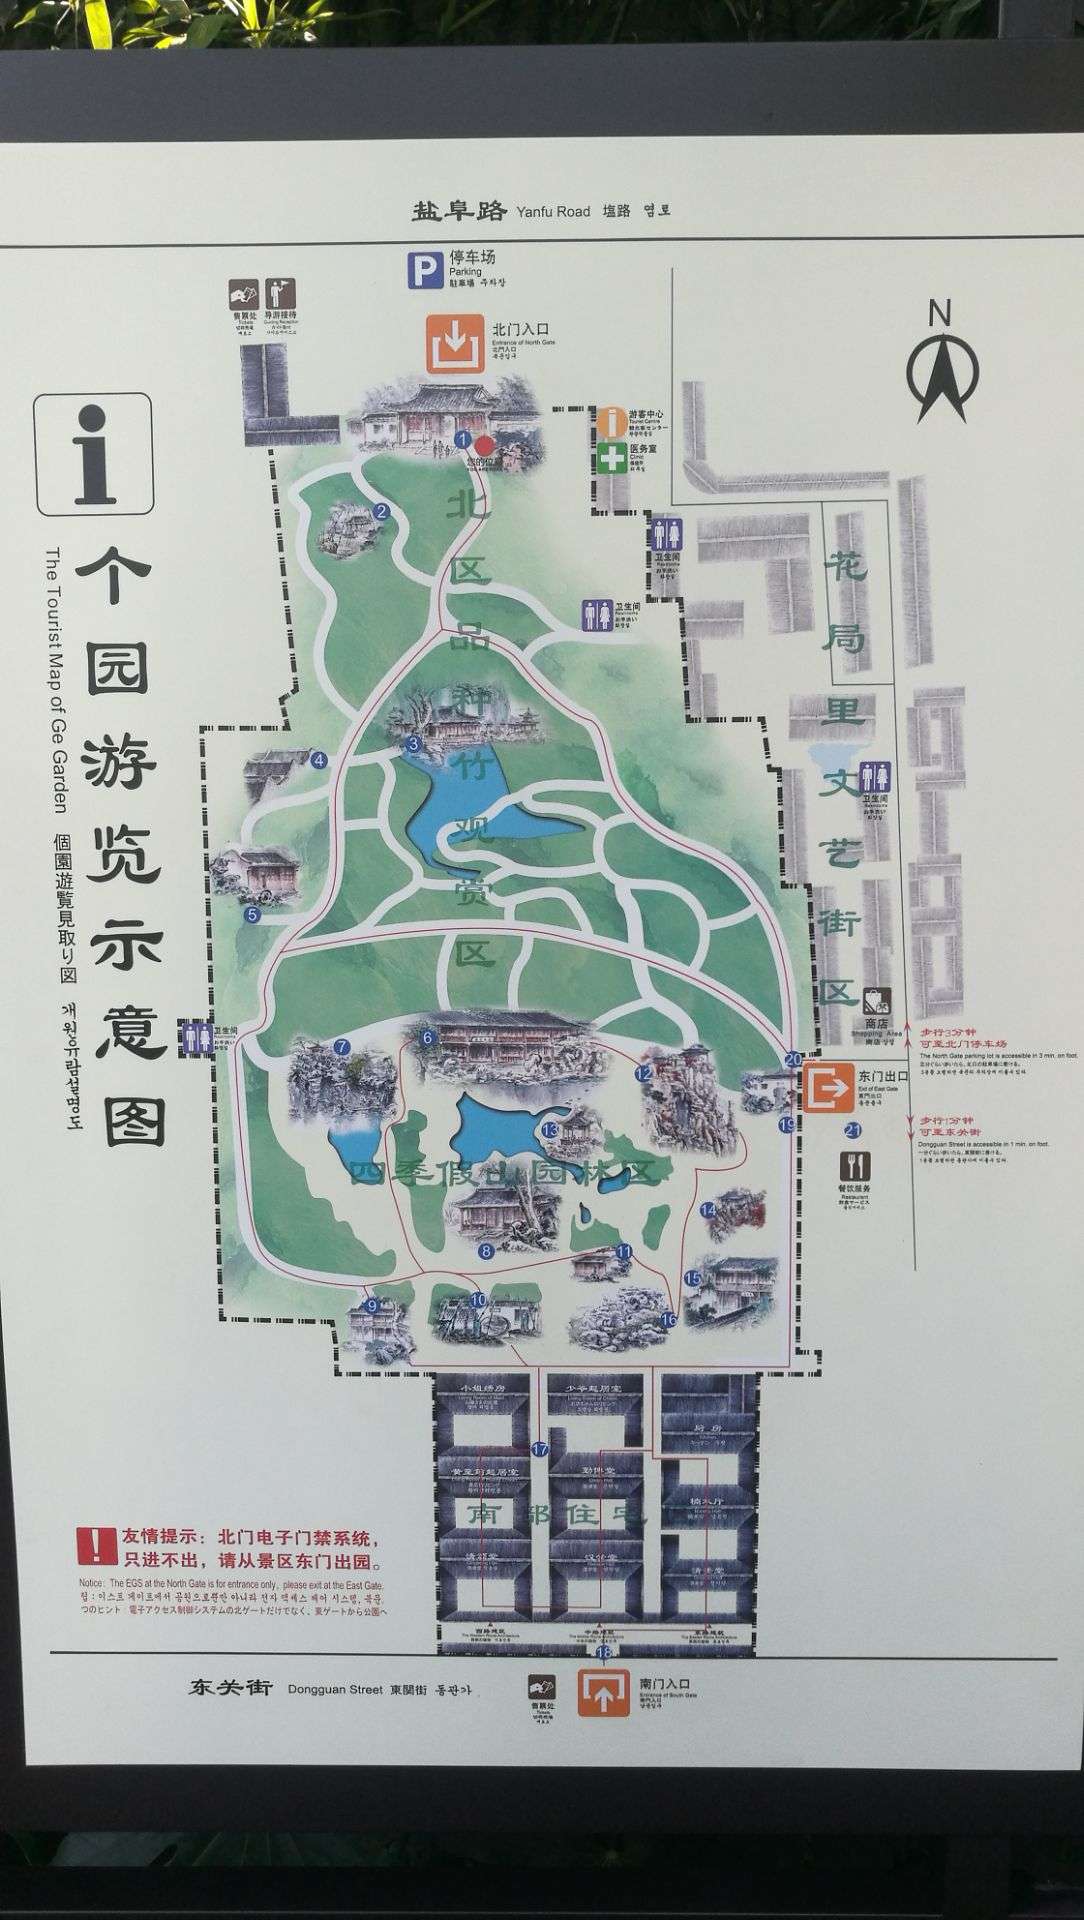 扬州个园游览顺序图片